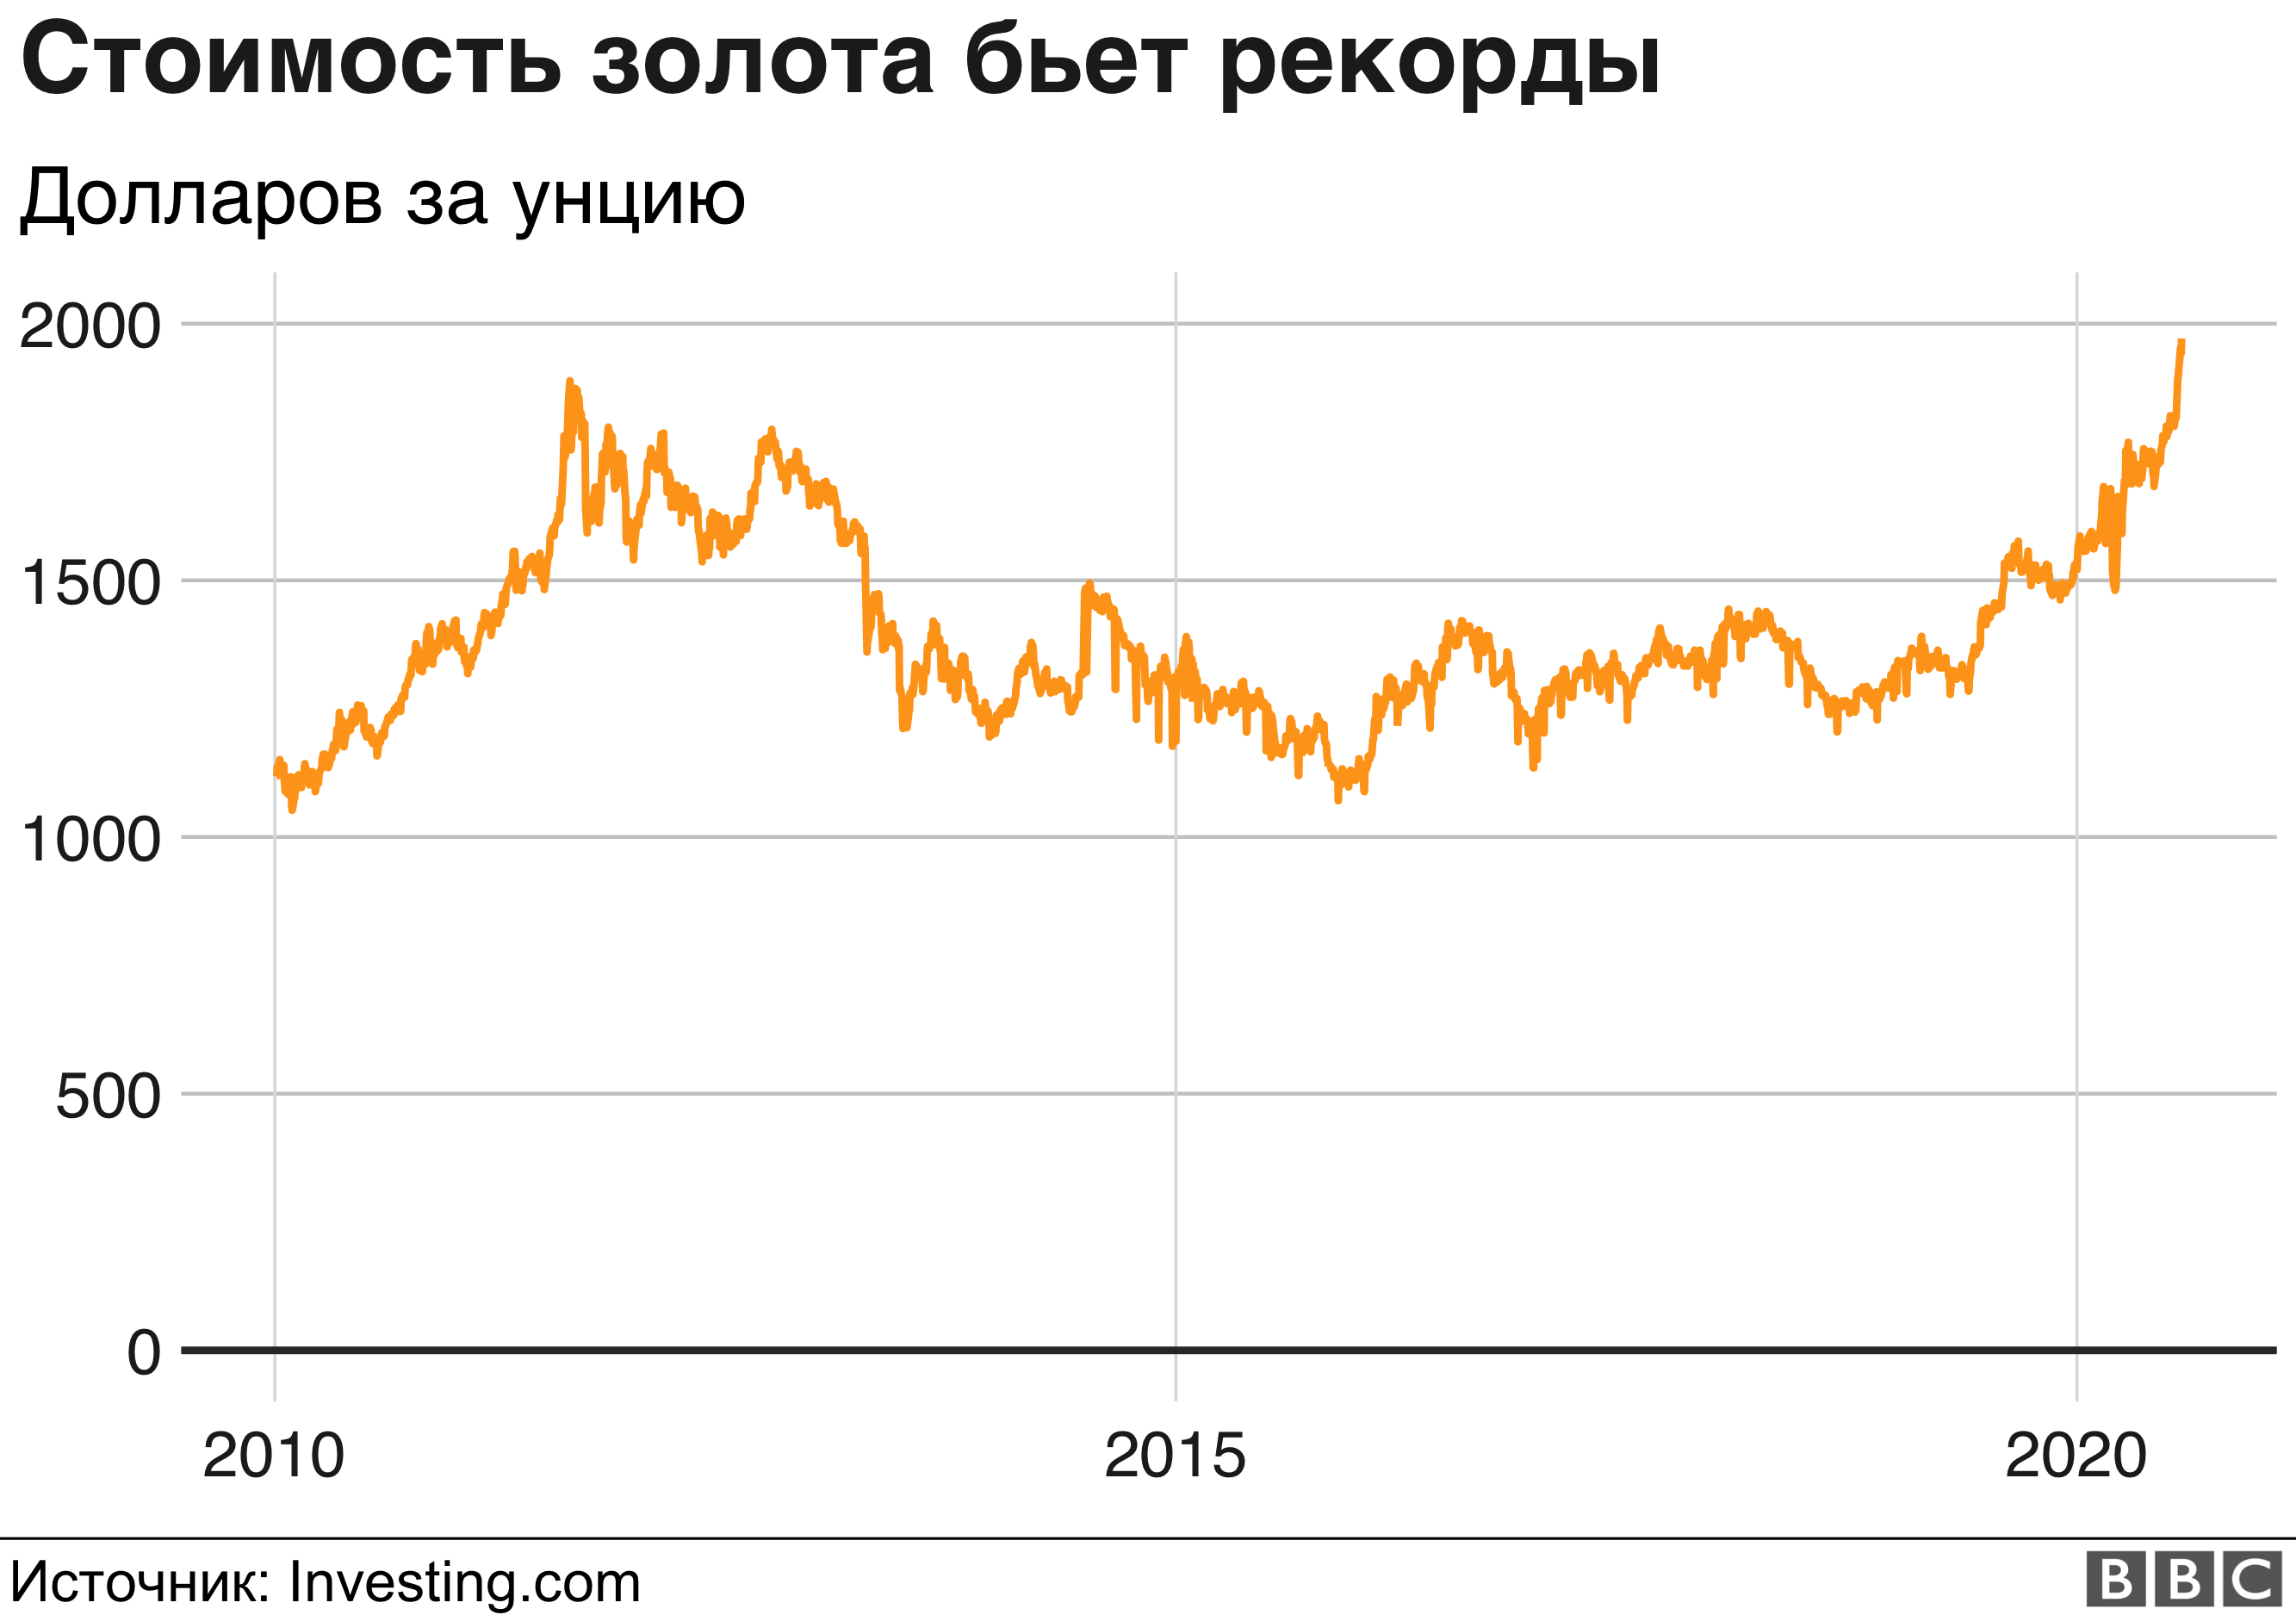 Доклад: Полная конвертируемость рубля за два года